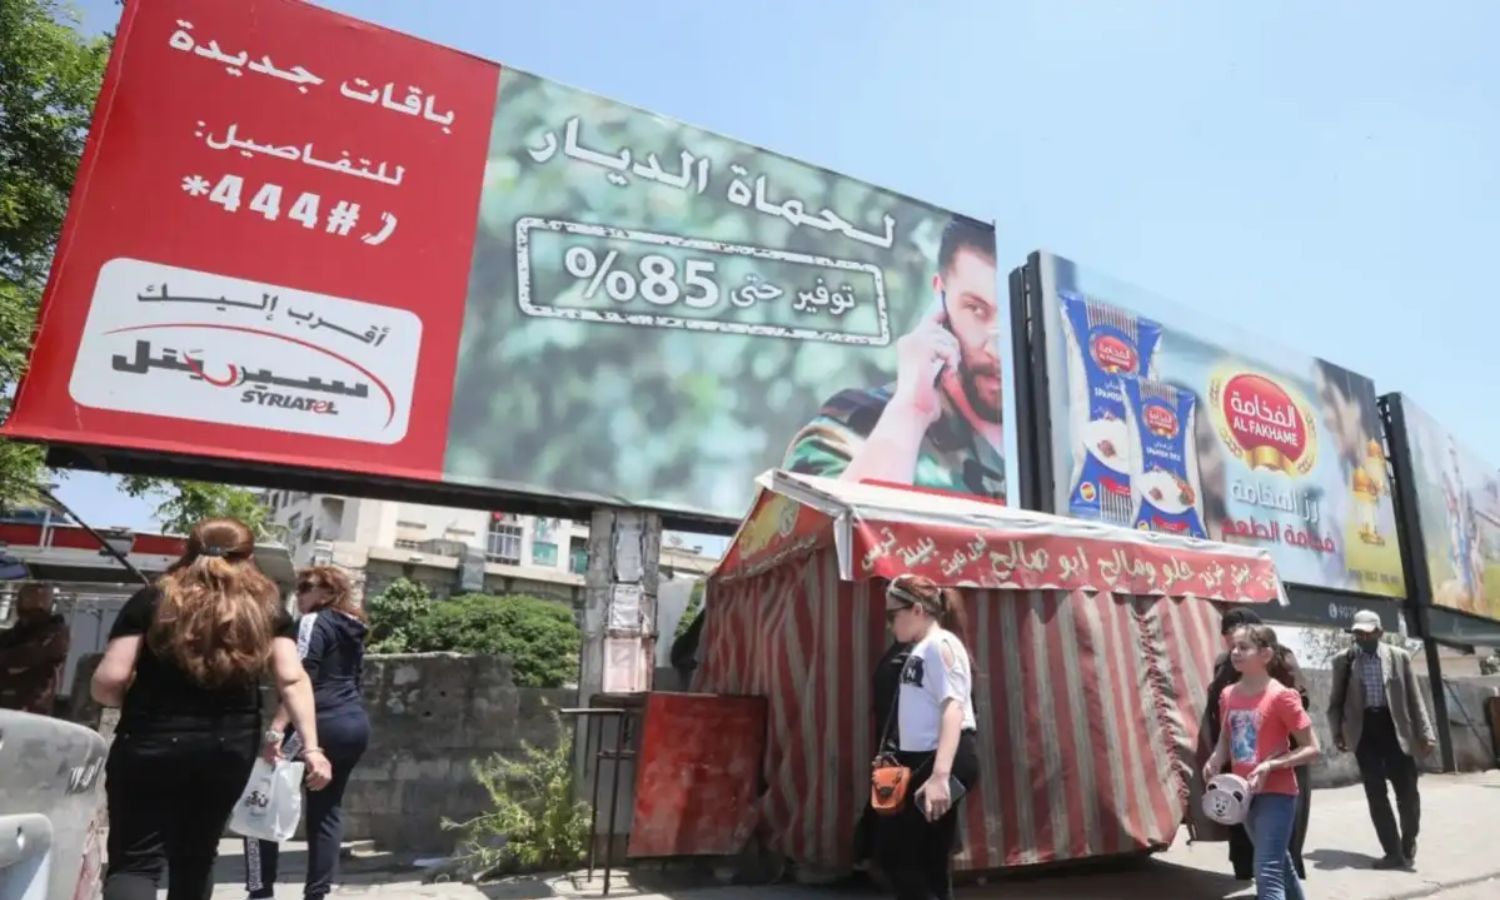 لوحة إعلانية لشركة "سيريتل"، أكبر مشغل للهاتف المحمول في سوريا، في العاصمة السورية دمشق- 2020 (AFP)